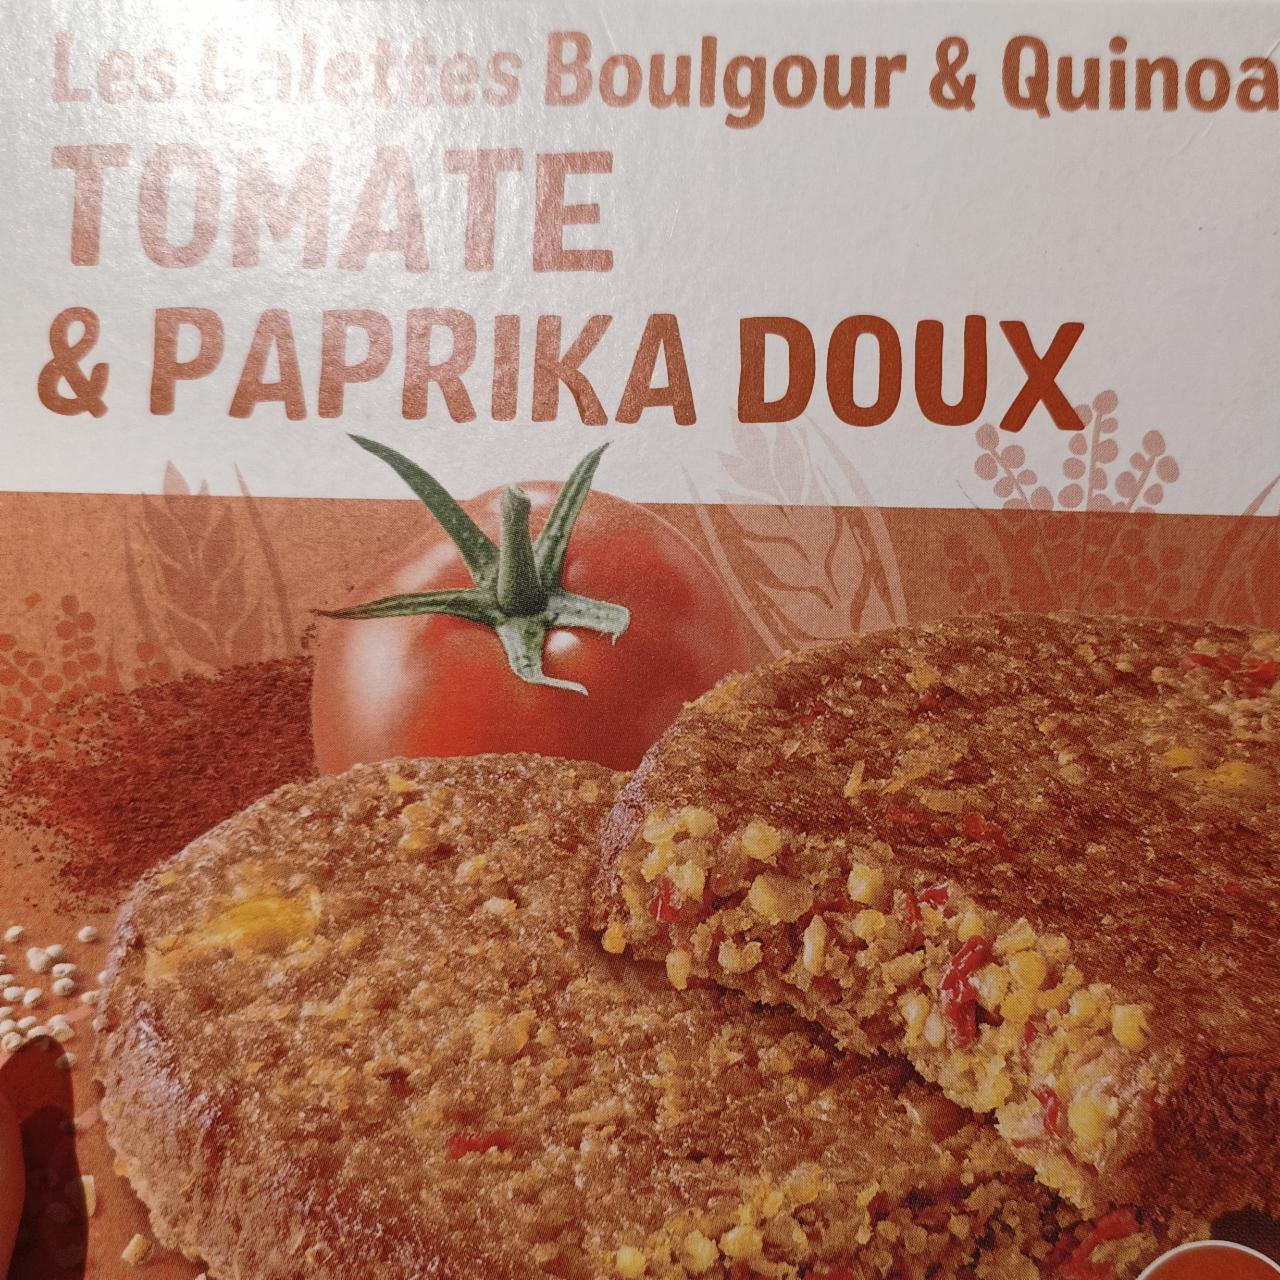 Fotografie - Les Galettes Boulgour & Quinoa Tomate & Paprika doux Céréal